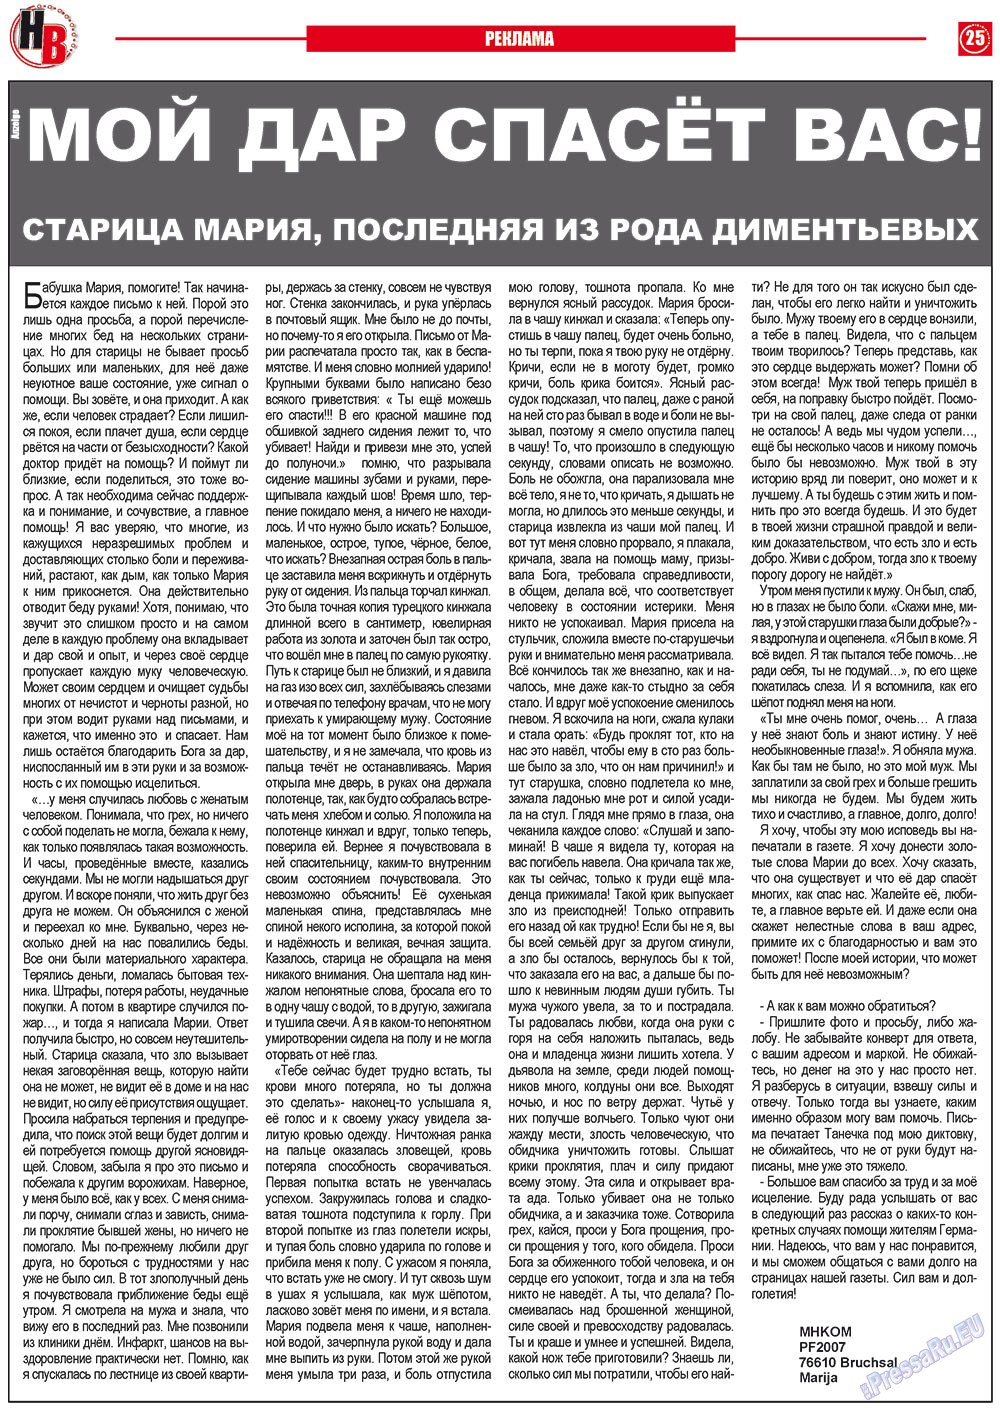 Наше время, газета. 2012 №6 стр.25